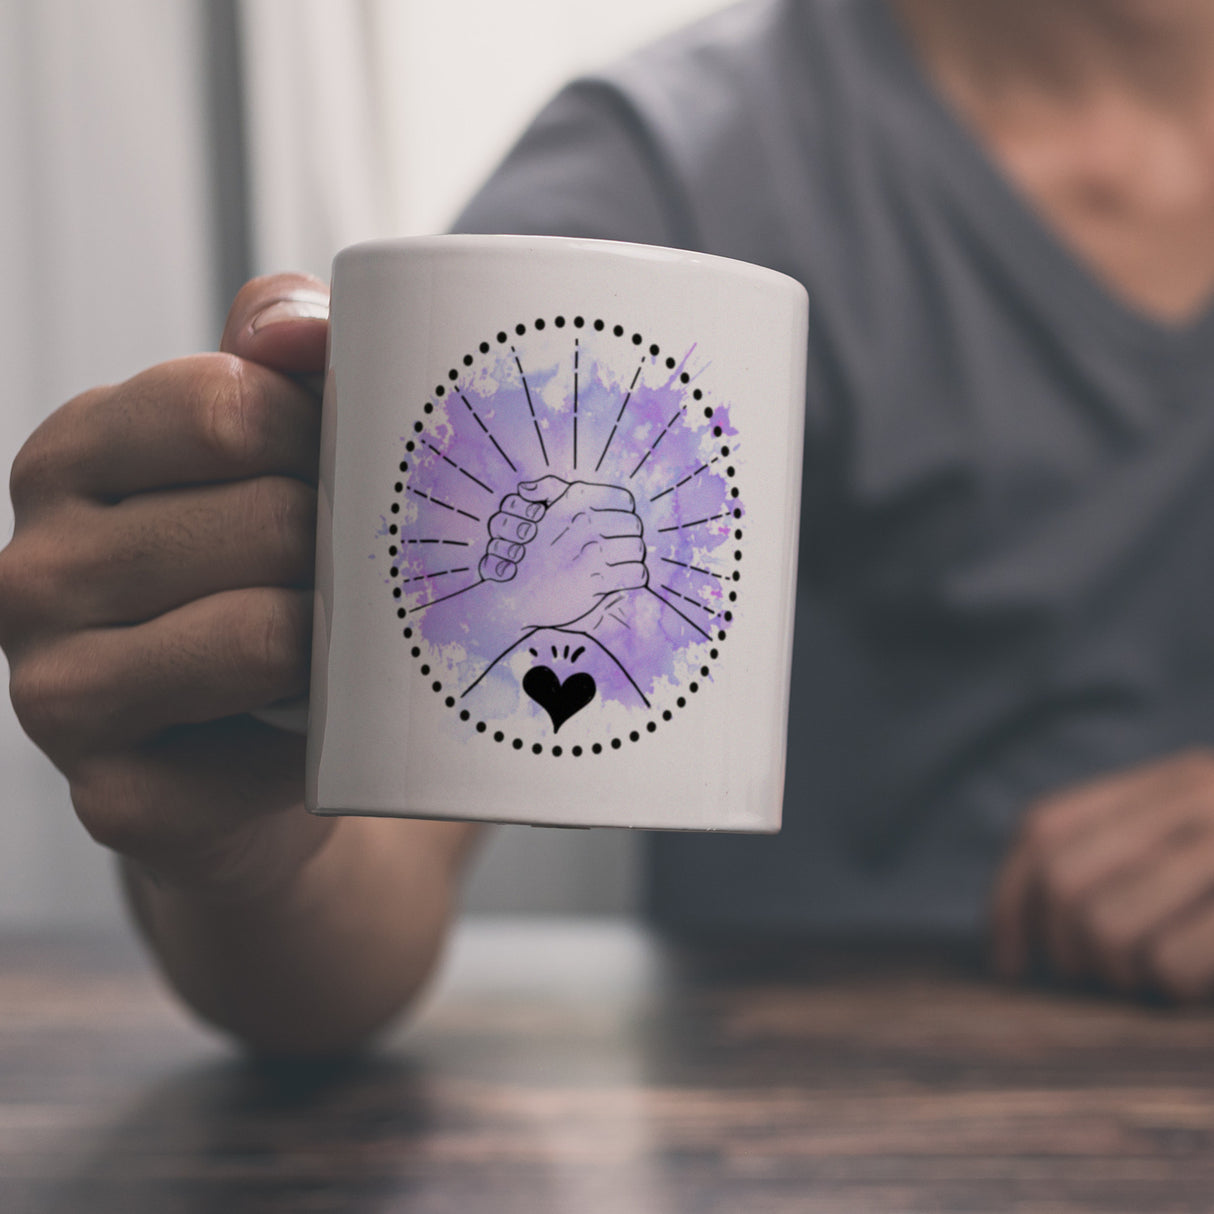 Freundschaft Kaffeebecher in violett mit tollem Spruch